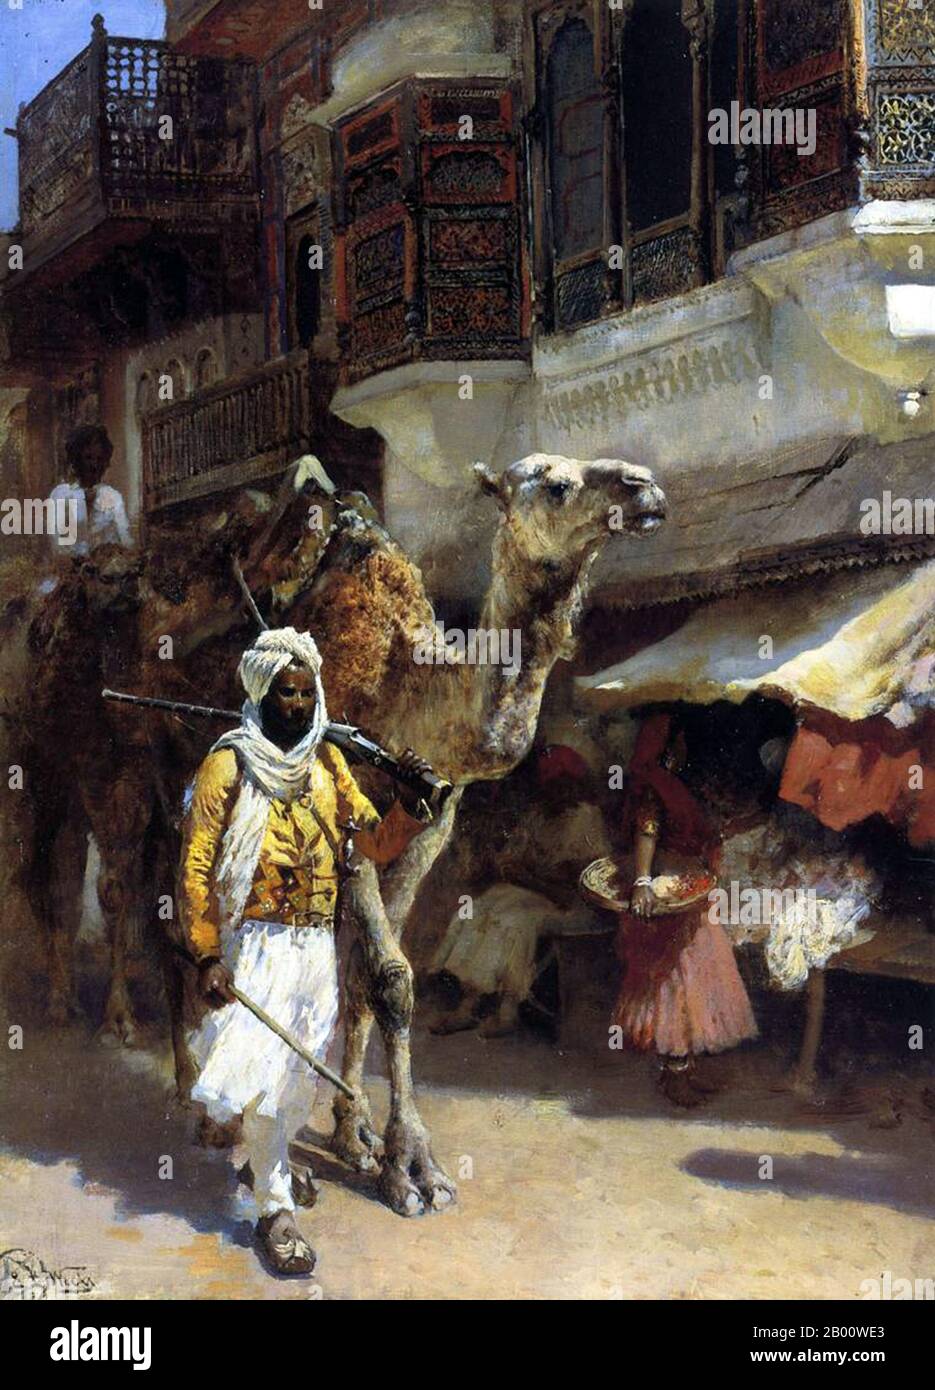 Inde : « un homme à la tête d'un chameau ». Peinture à l'huile sur toile par Edwin Lord Weeks (1849-1903), c. 1885. Edwin Lord Weeks (1849 – 1903), artiste et orientaliste américain, est né à Boston, Massachusetts, en 1849. Il fut élève de Léon Bonnat et de Jean-Léon Gérame, à Paris. Il a fait de nombreux voyages à l'est, et a été distingué comme un peintre de scènes orientales. Les parents de Weeks étaient de riches marchands d'épices et de thé de Newton, une banlieue de Boston, et ils ont ainsi pu accepter, probablement encourager, et certainement financer l'intérêt de la jeunesse de leur fils pour la peinture et les voyages. Banque D'Images